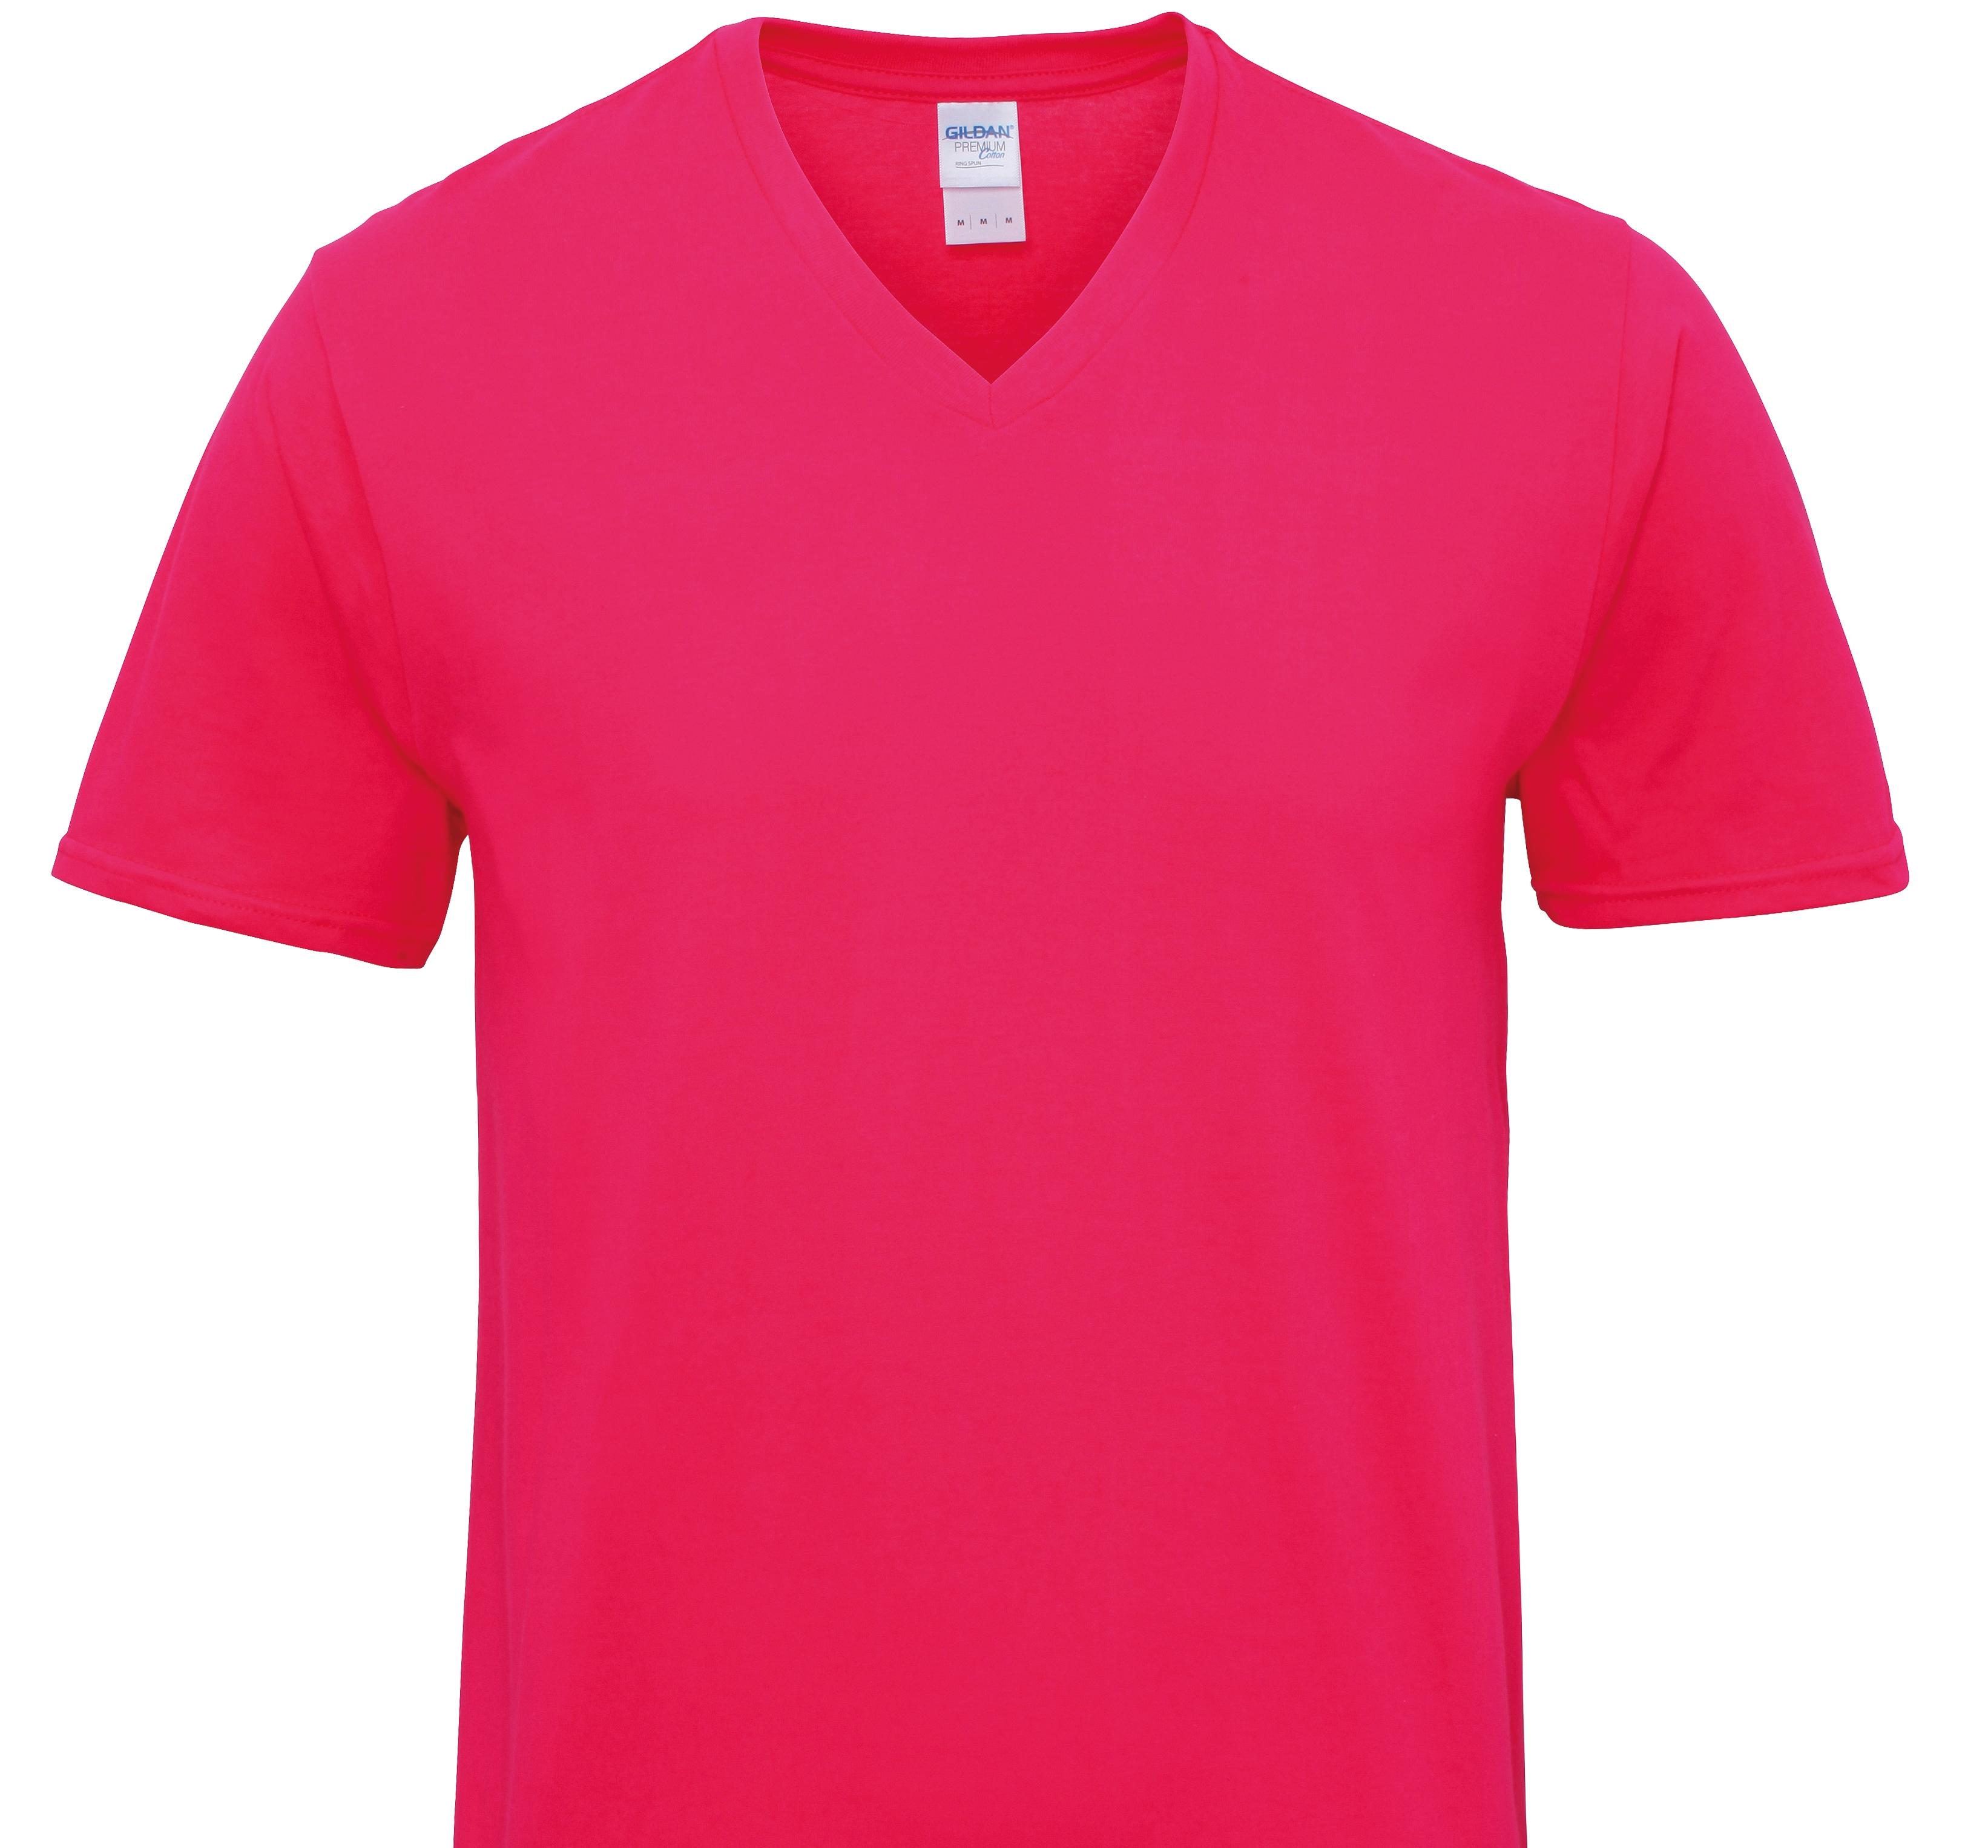 English Springer Spaniel T-Shirts Women's V Neck Premium Cotton